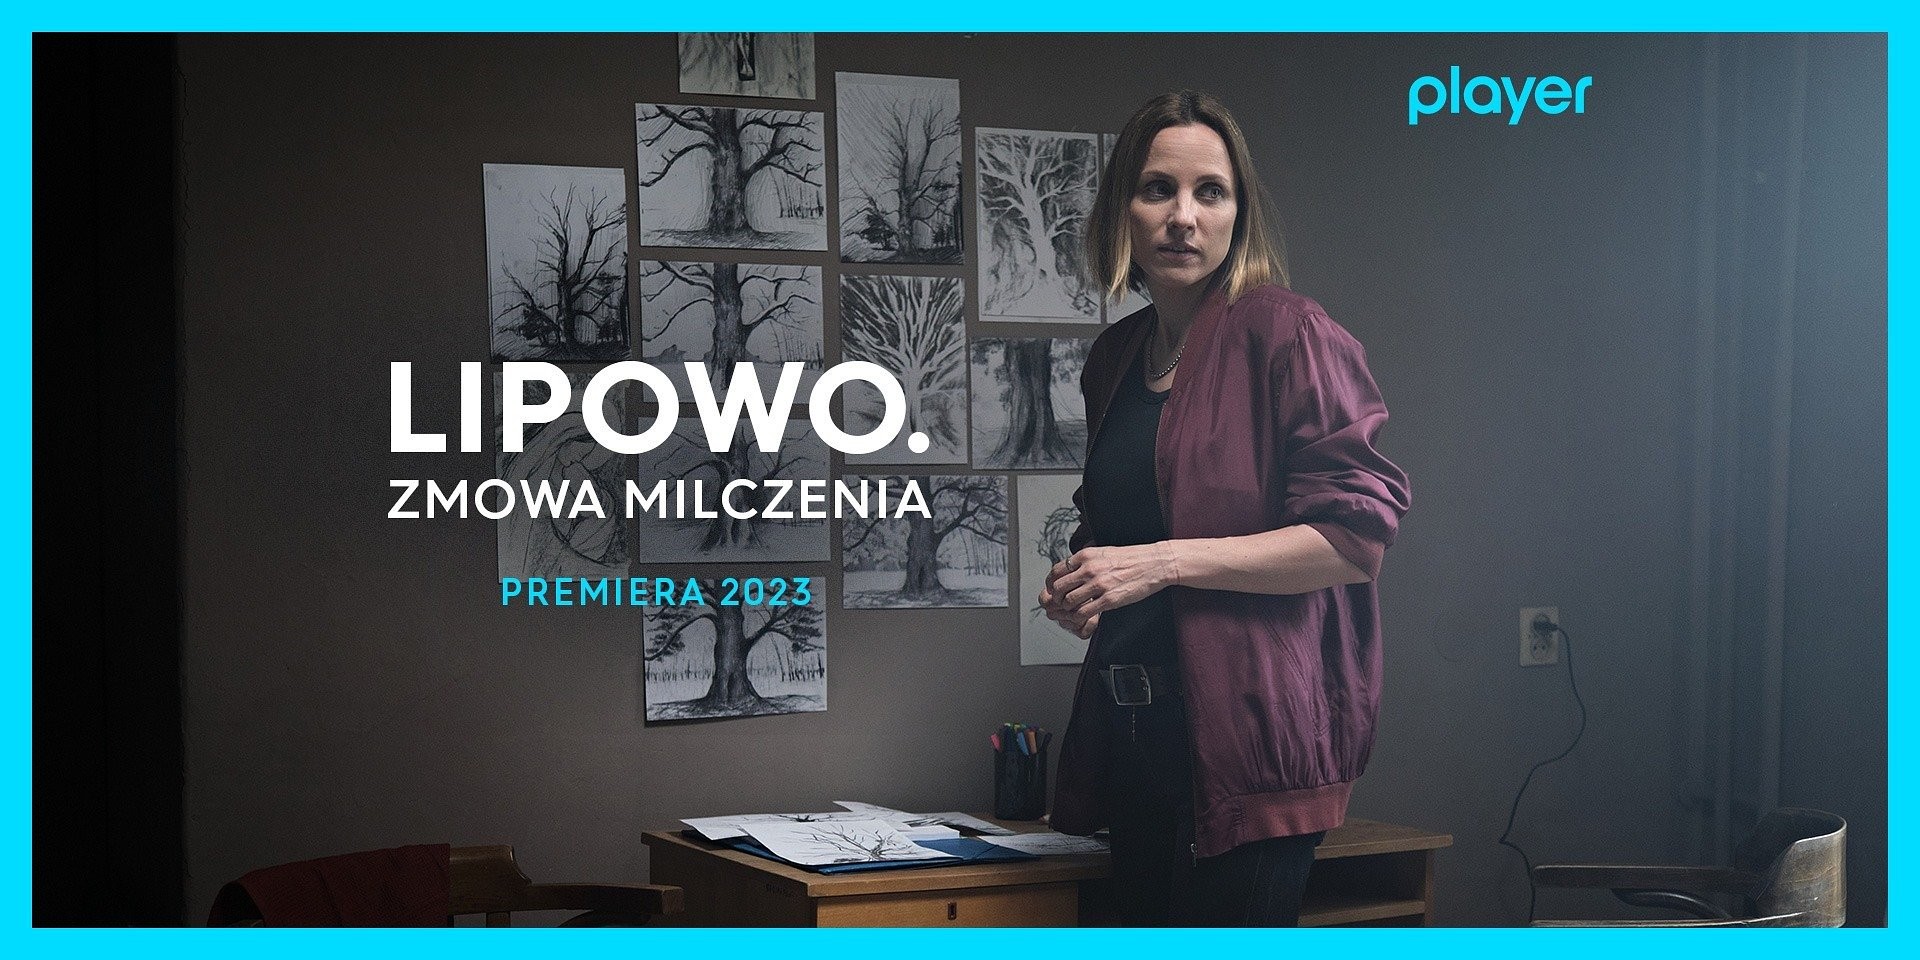 Julia Kijowska w serialu Lipowo. Zmowa milczenia dla Player.jpg